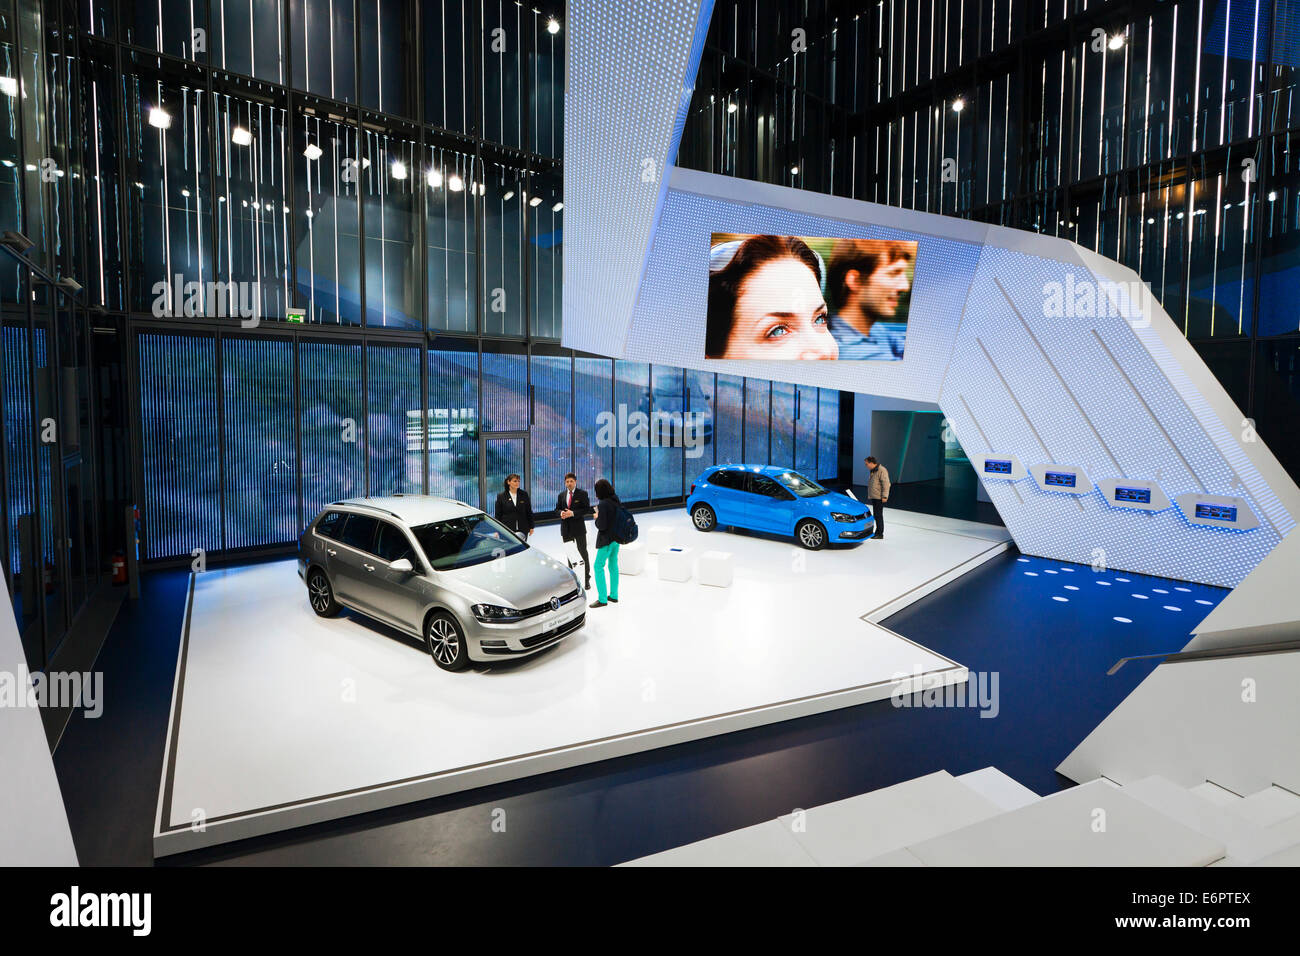 Marke-Pavillon der VW Autostadt der Volkswagen AG, Wolfsburg,  Niedersachsen, Deutschland Stockfotografie - Alamy